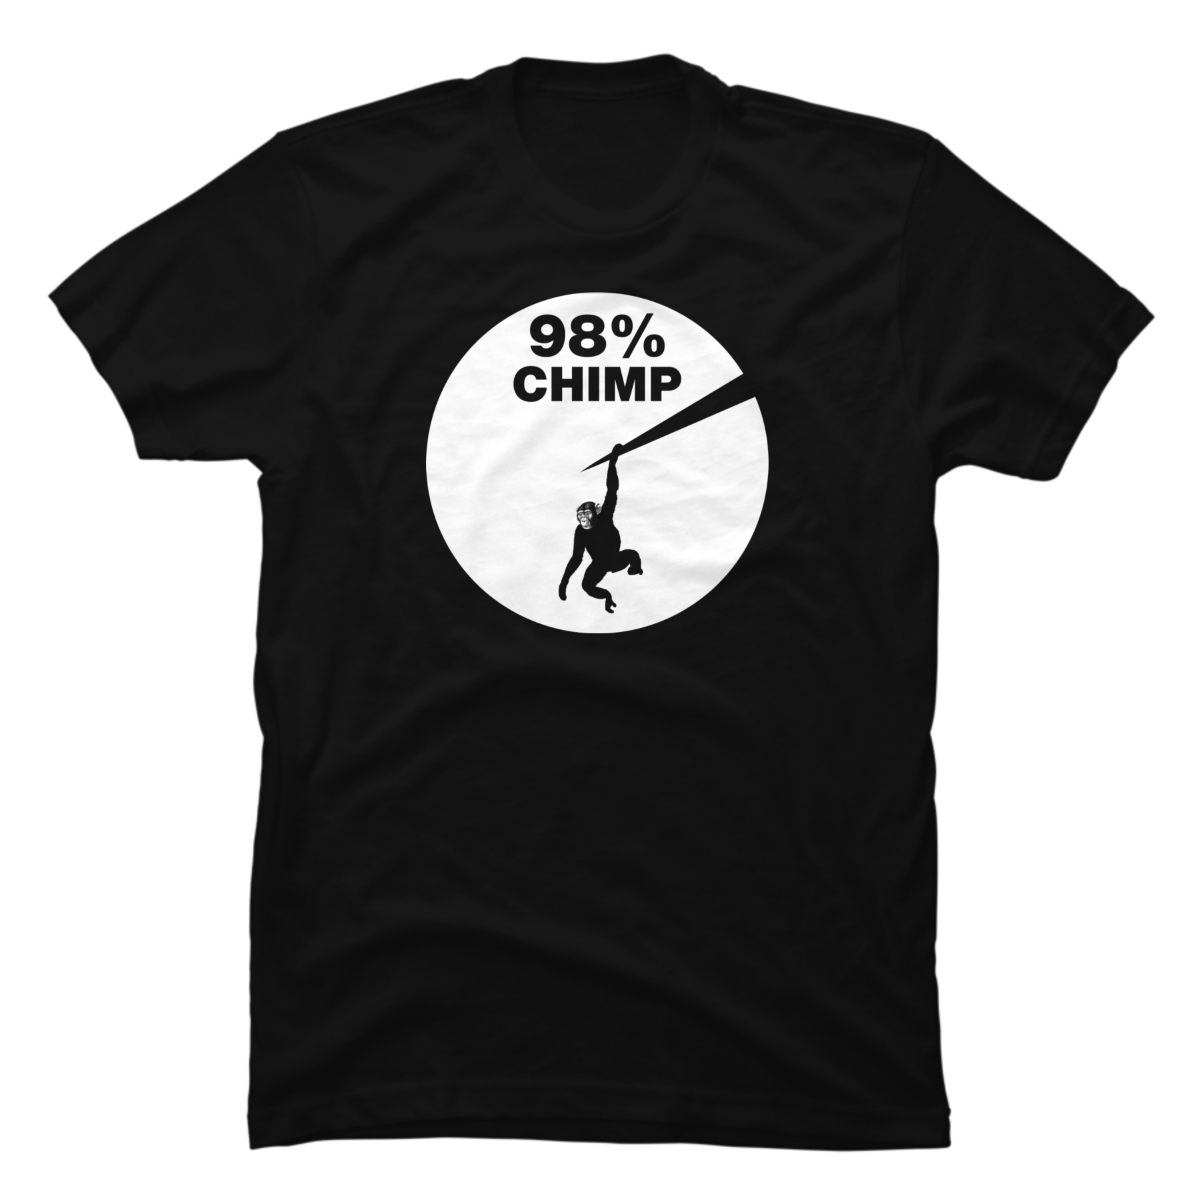 98 chimp shirt